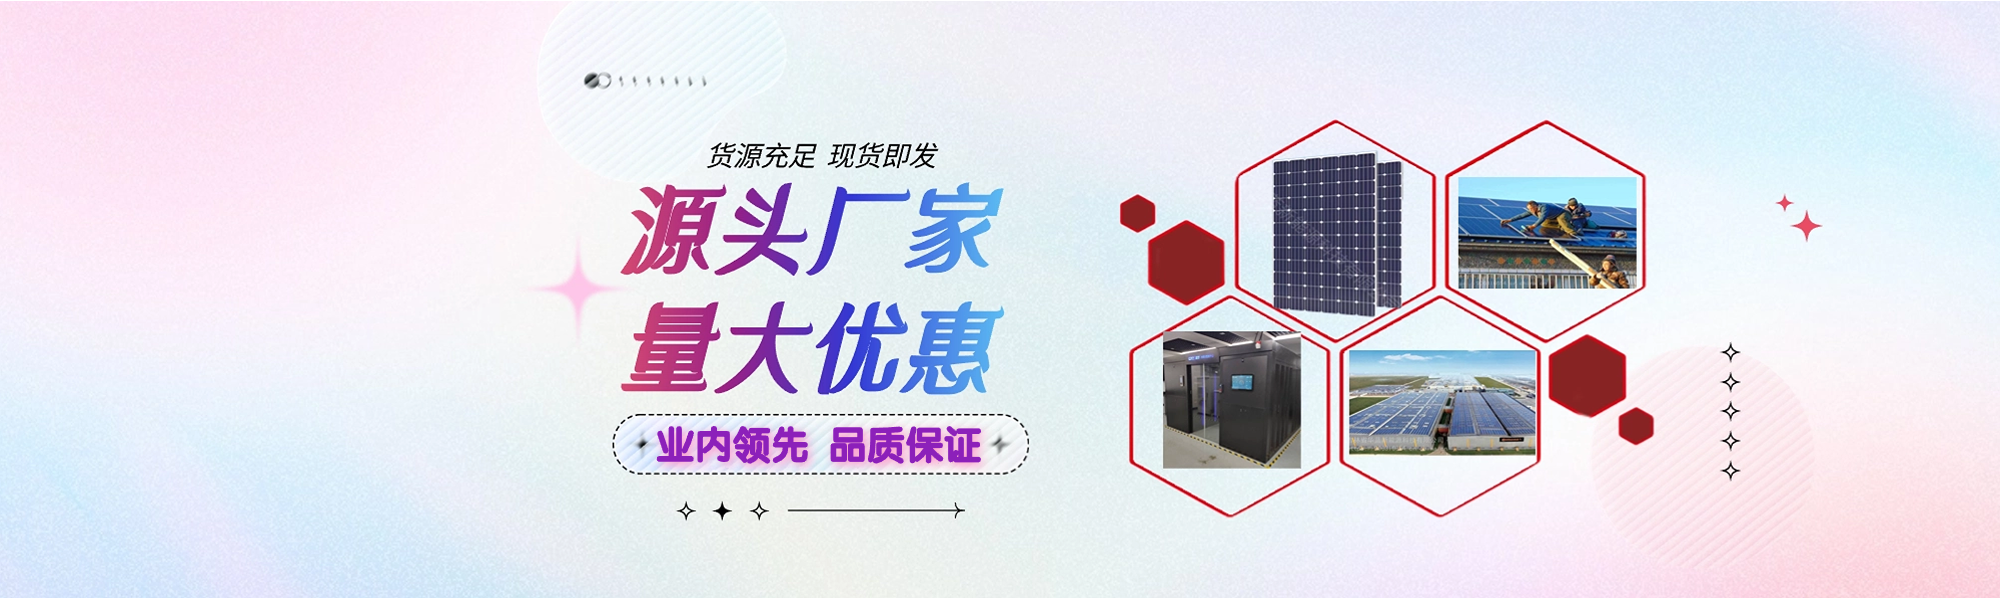 吉林省华蓝新能源科技有限公司